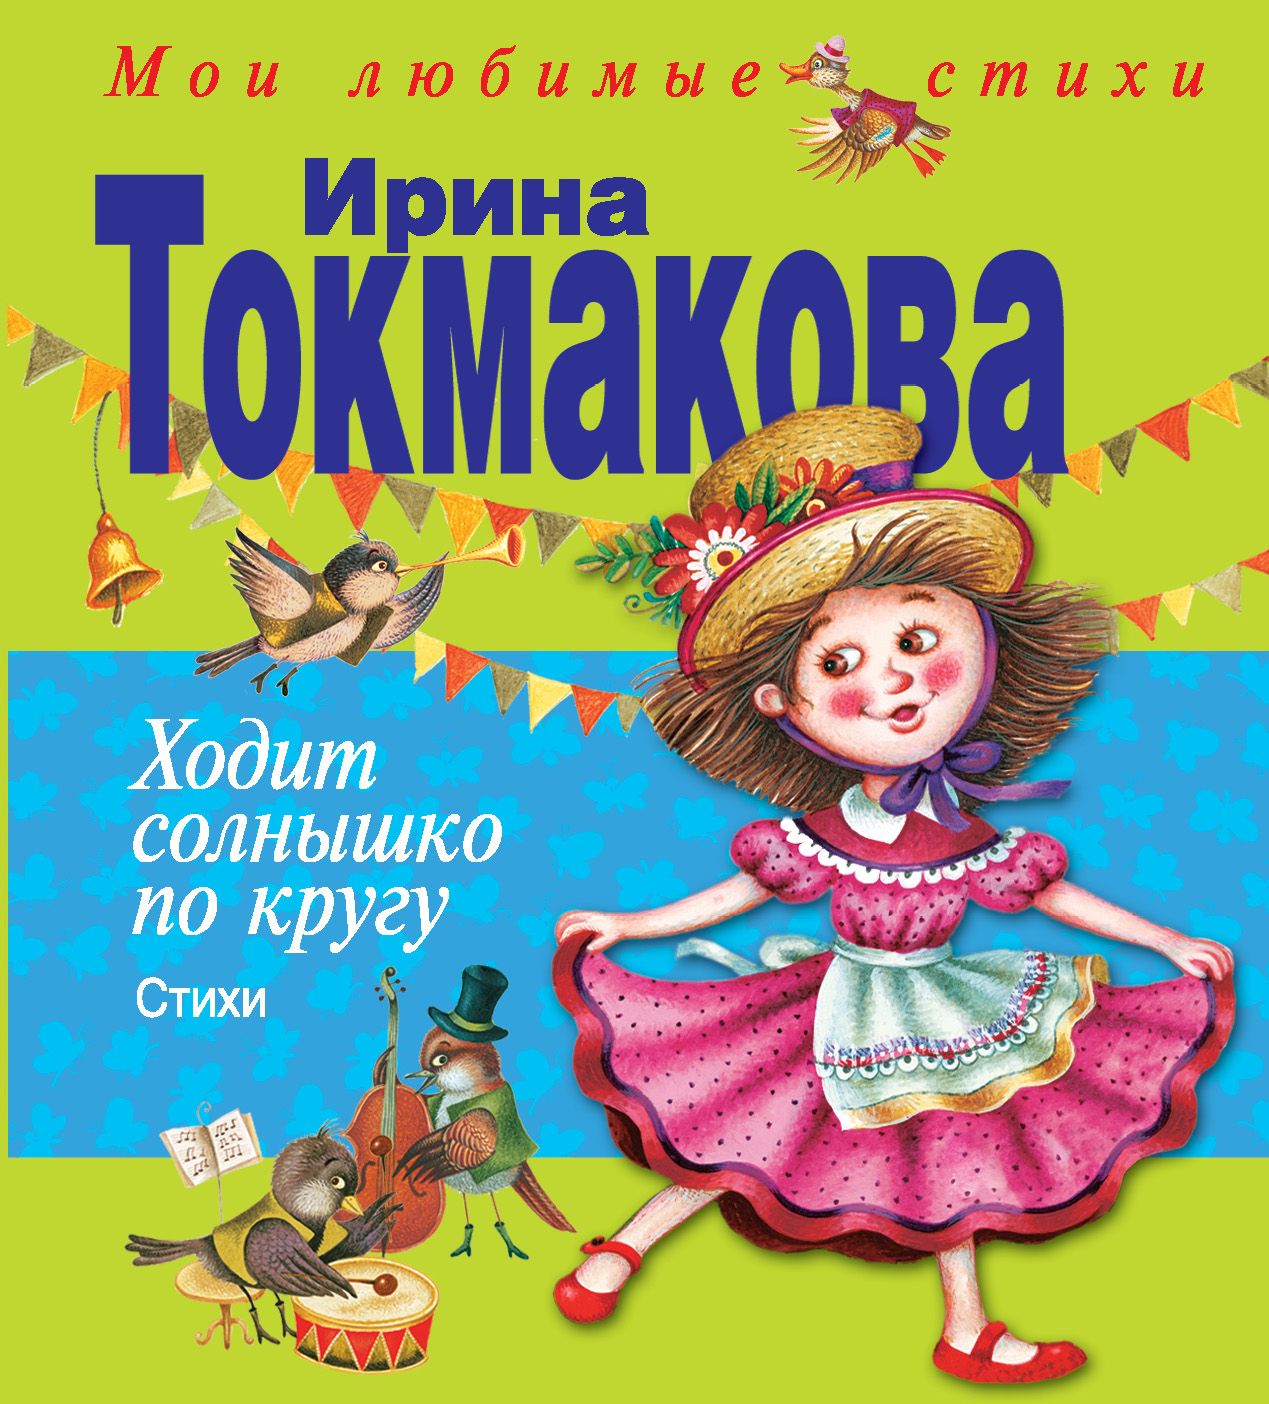 Книга про ирину. Книги Токмаковой для детей.